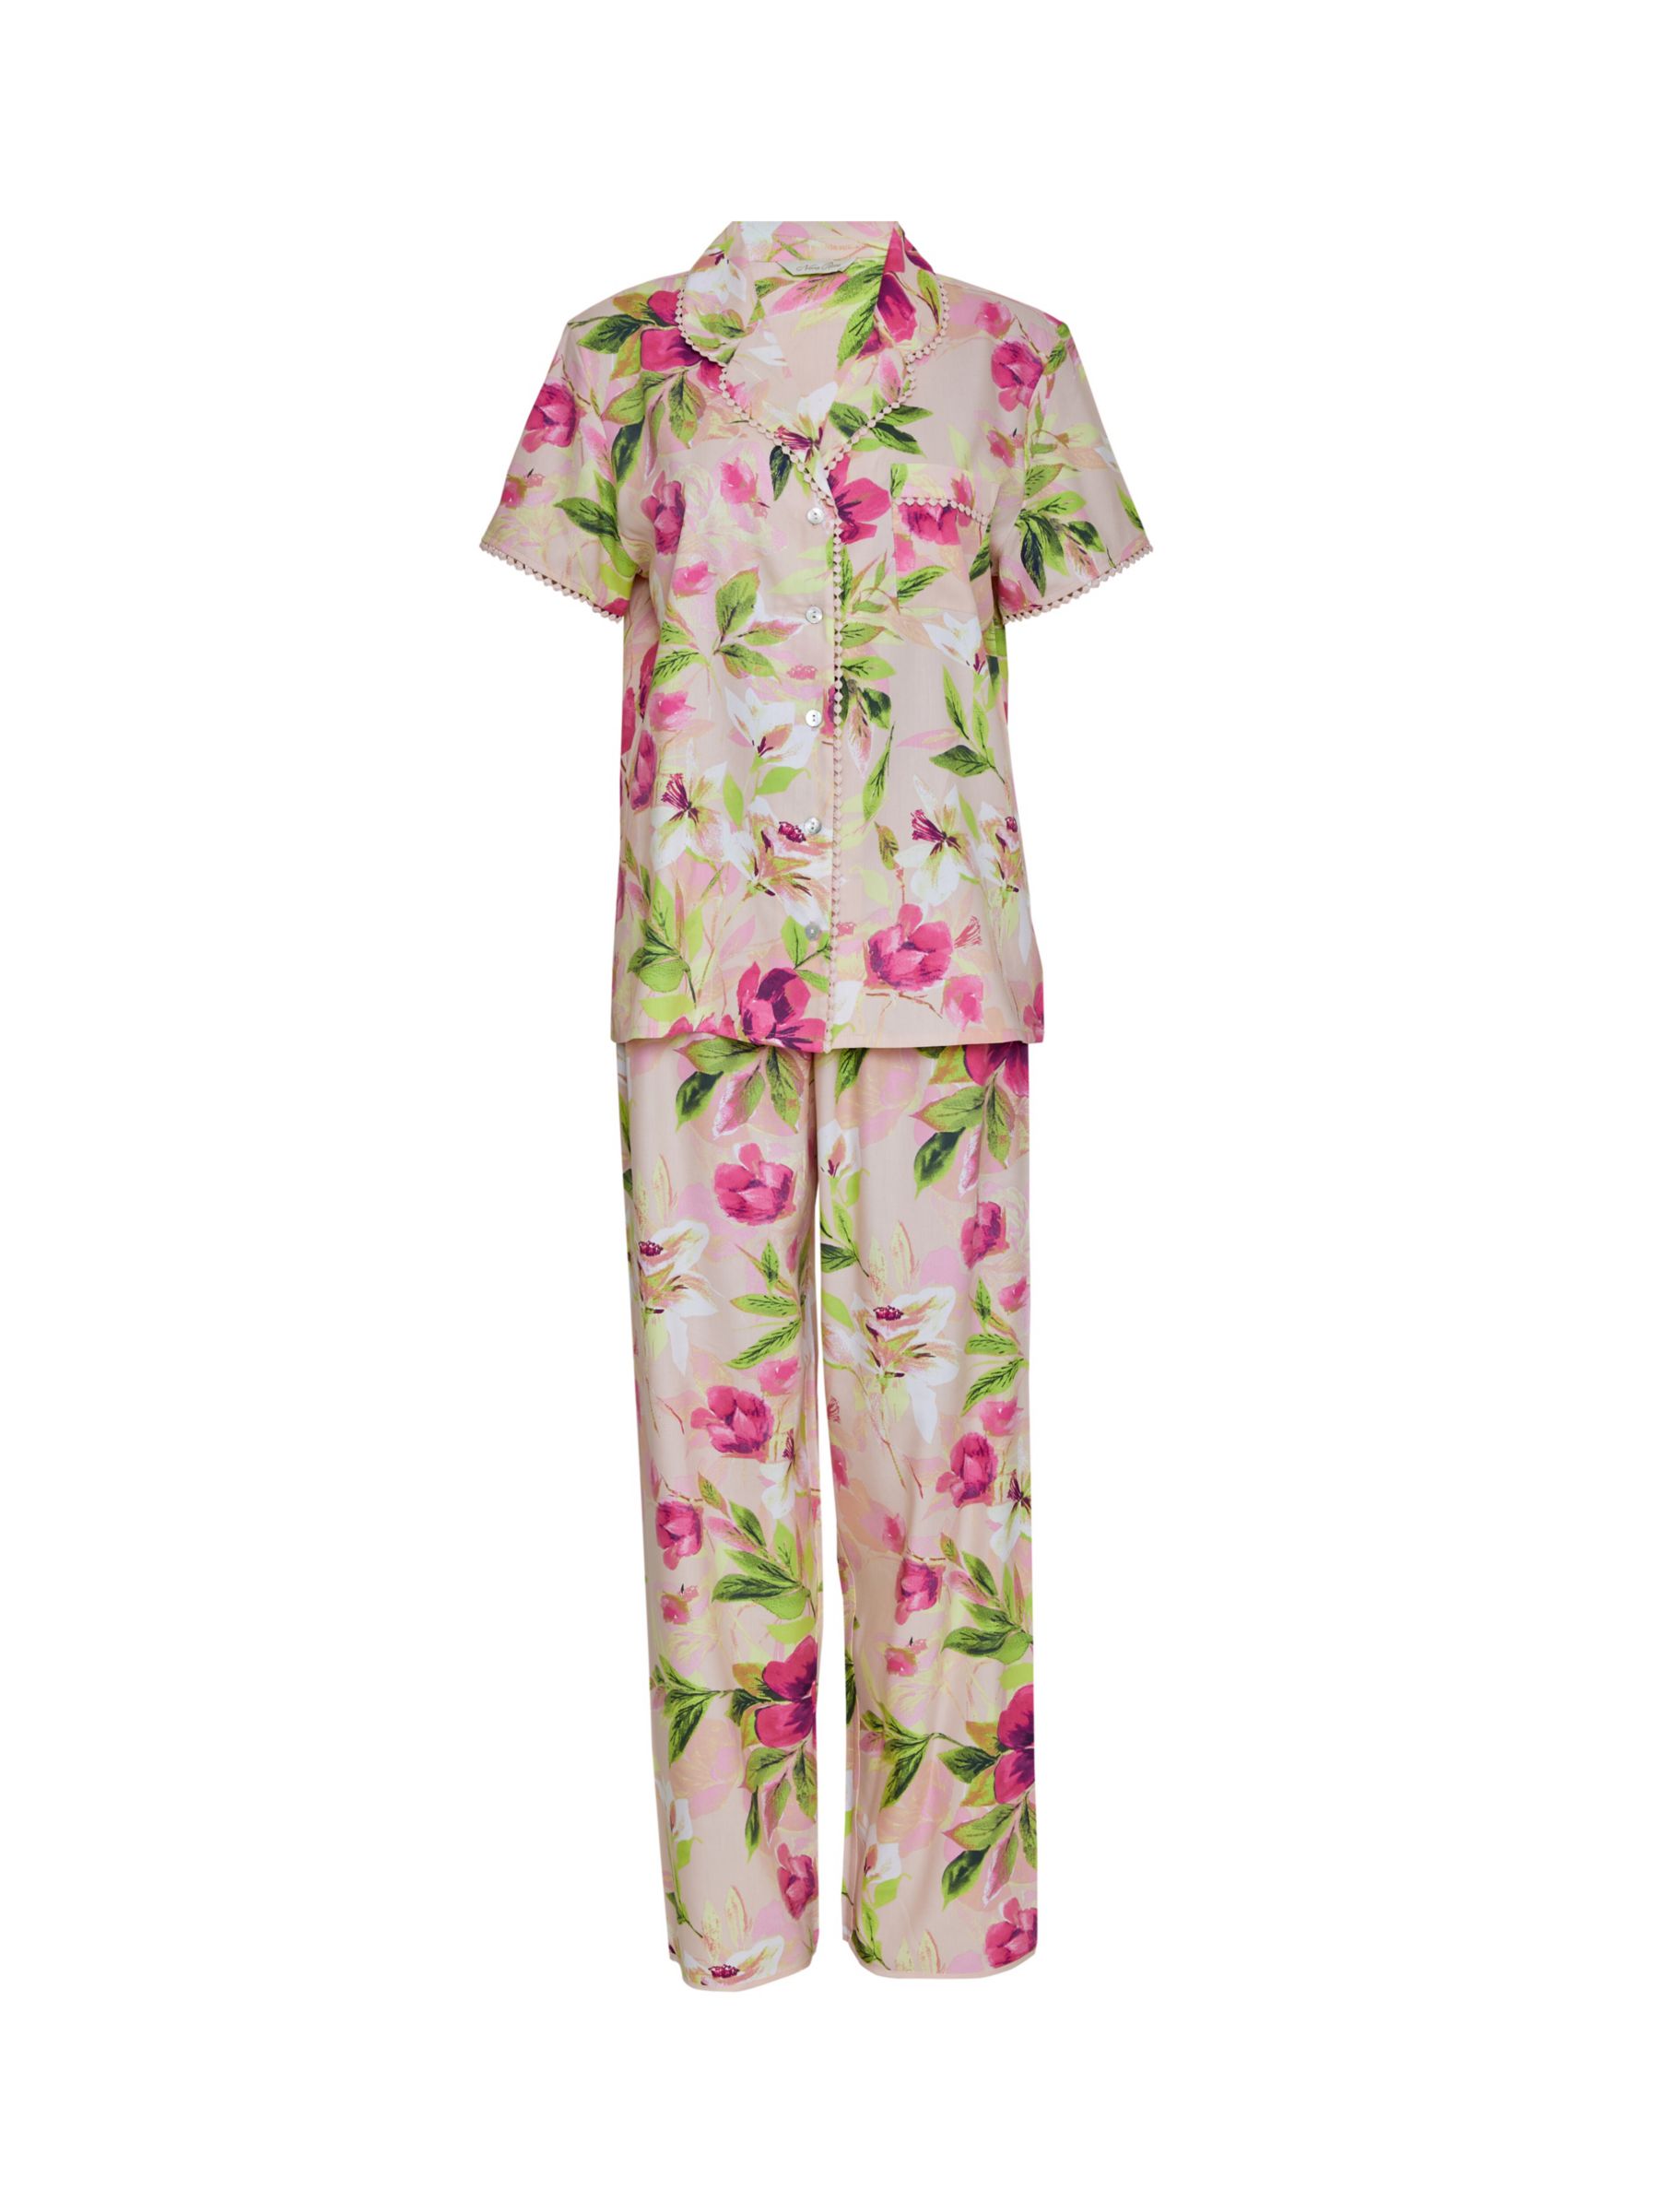 Buy Cyberjammies Tessa Floral Print Pyjama Set, Pink/Multi Online at johnlewis.com